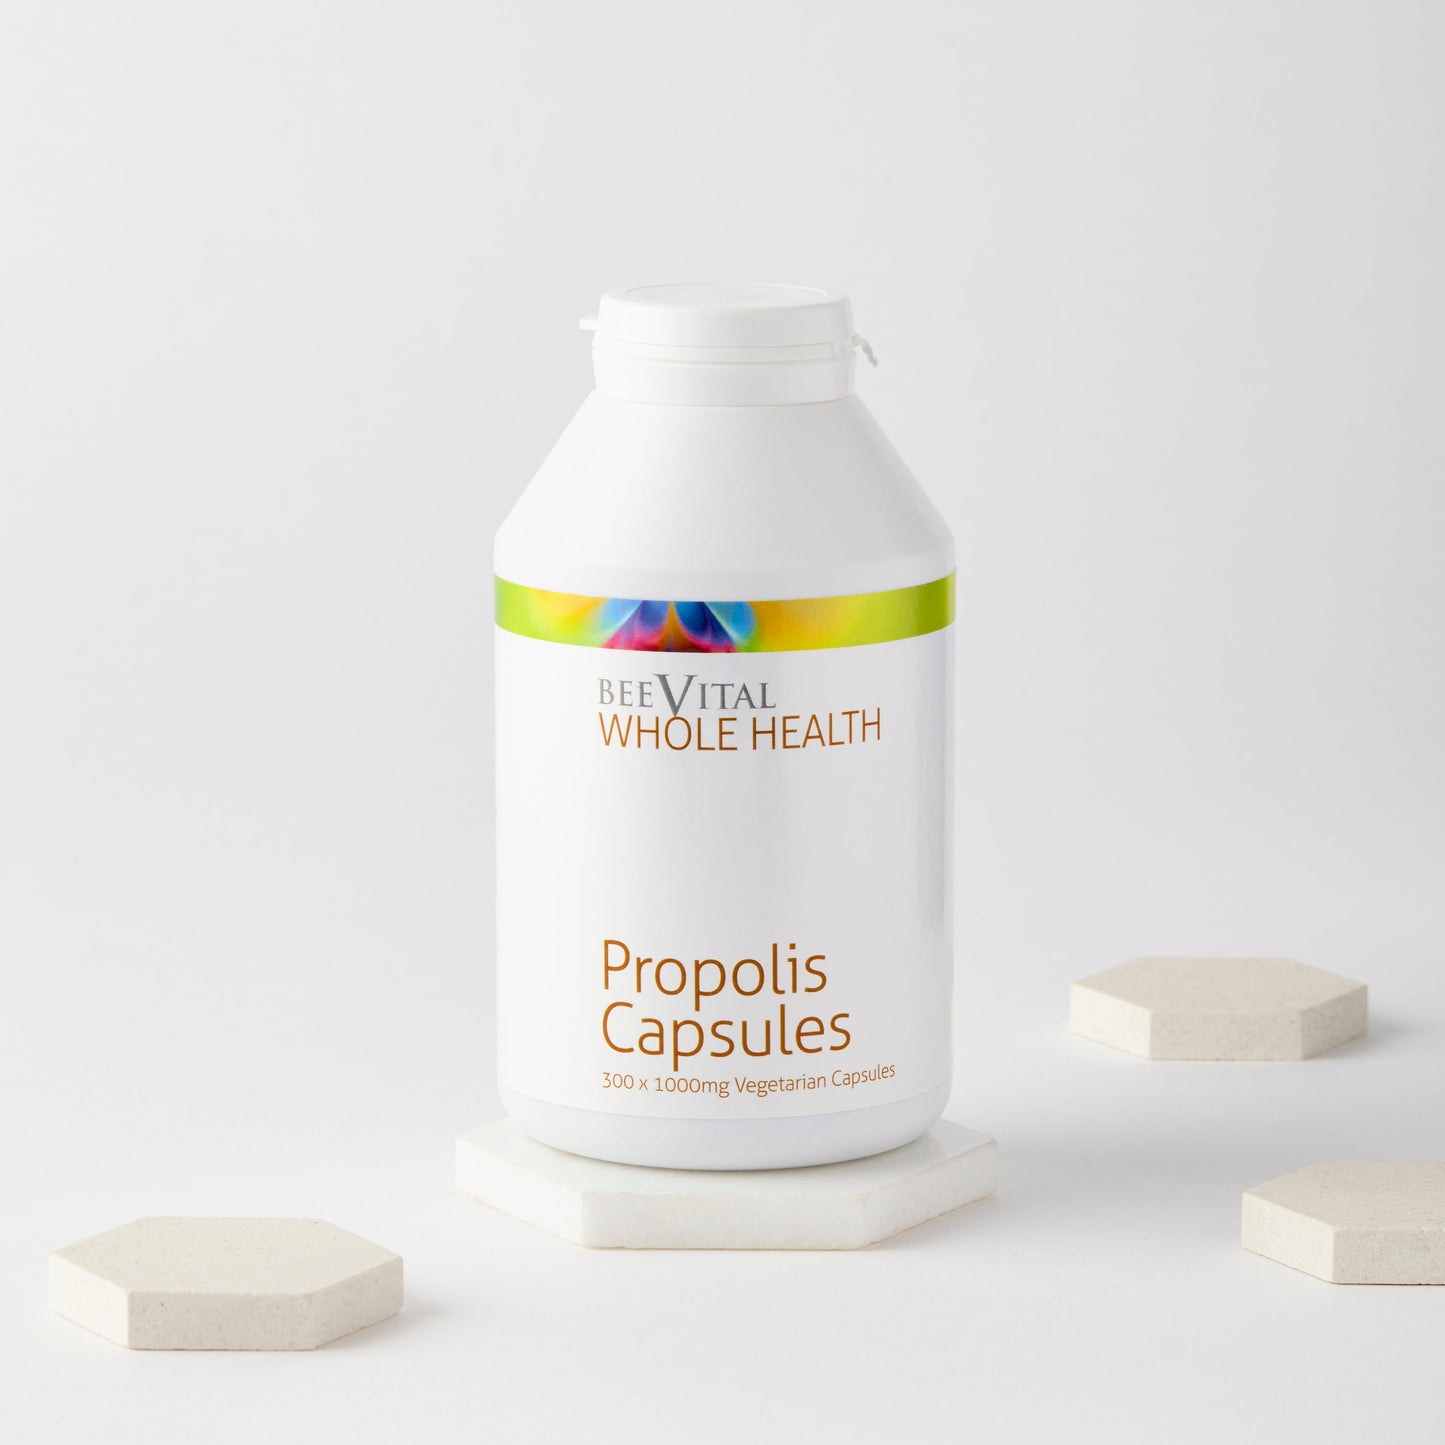 Propolis Capsules - 6 Pack